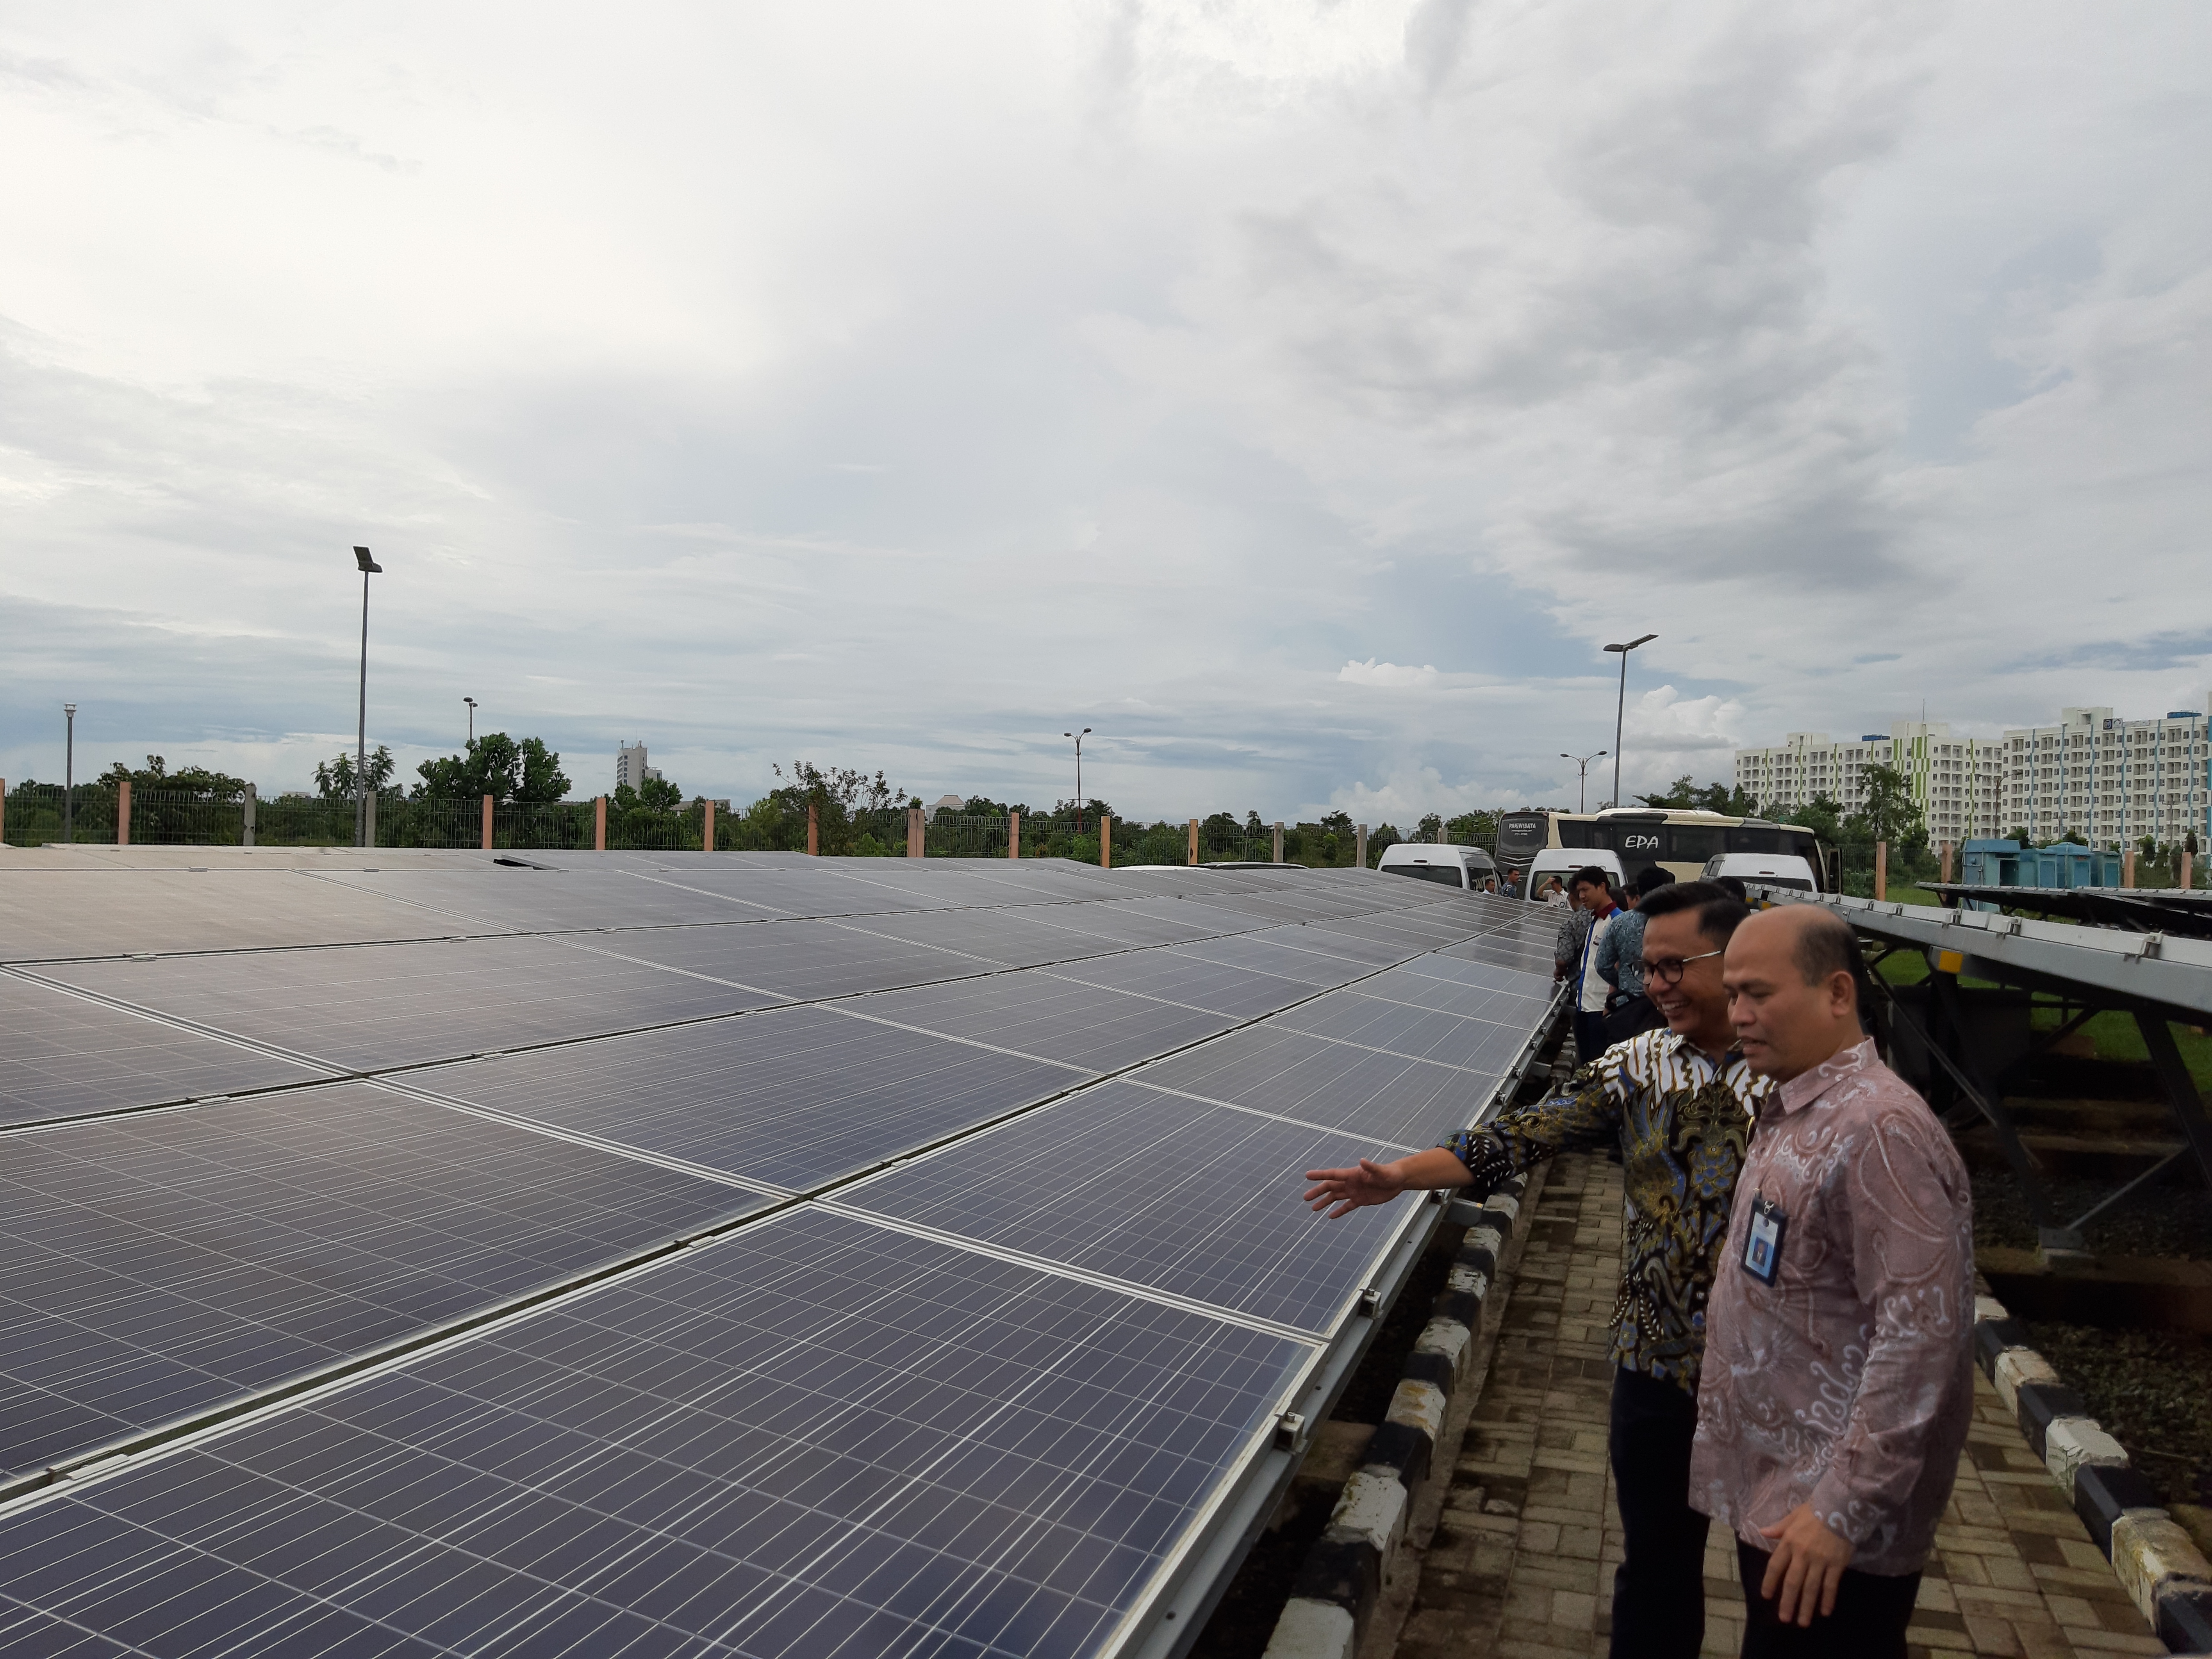 Mengapa pembangkit listrik tenaga surya sangat cocok diterapkan di indonesia